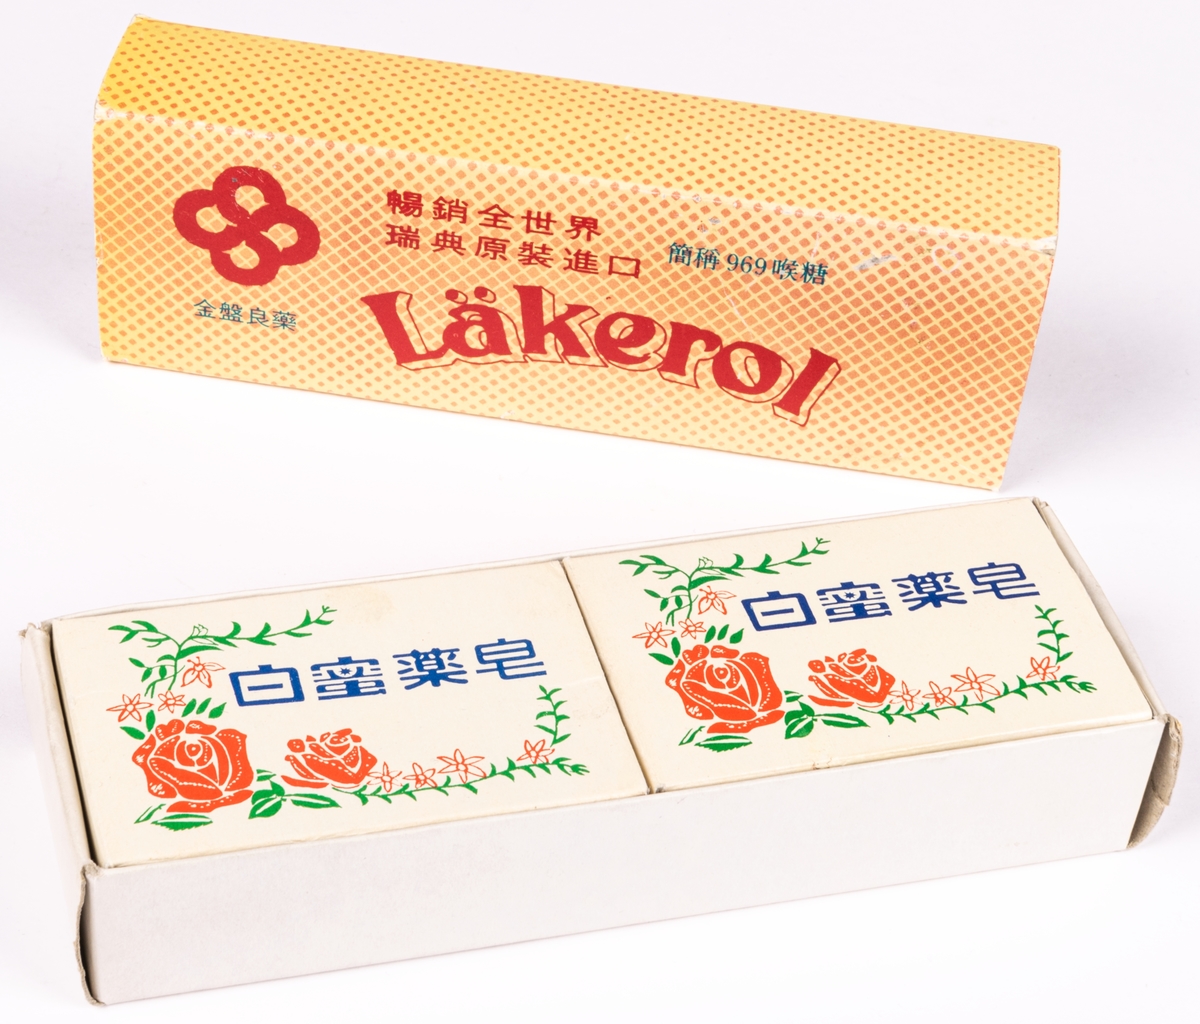 Tvålask i kartong, gul, innehållande två mindre askar med tvål. Text: "LÄKEROL" samt kinesiska bokstäver.